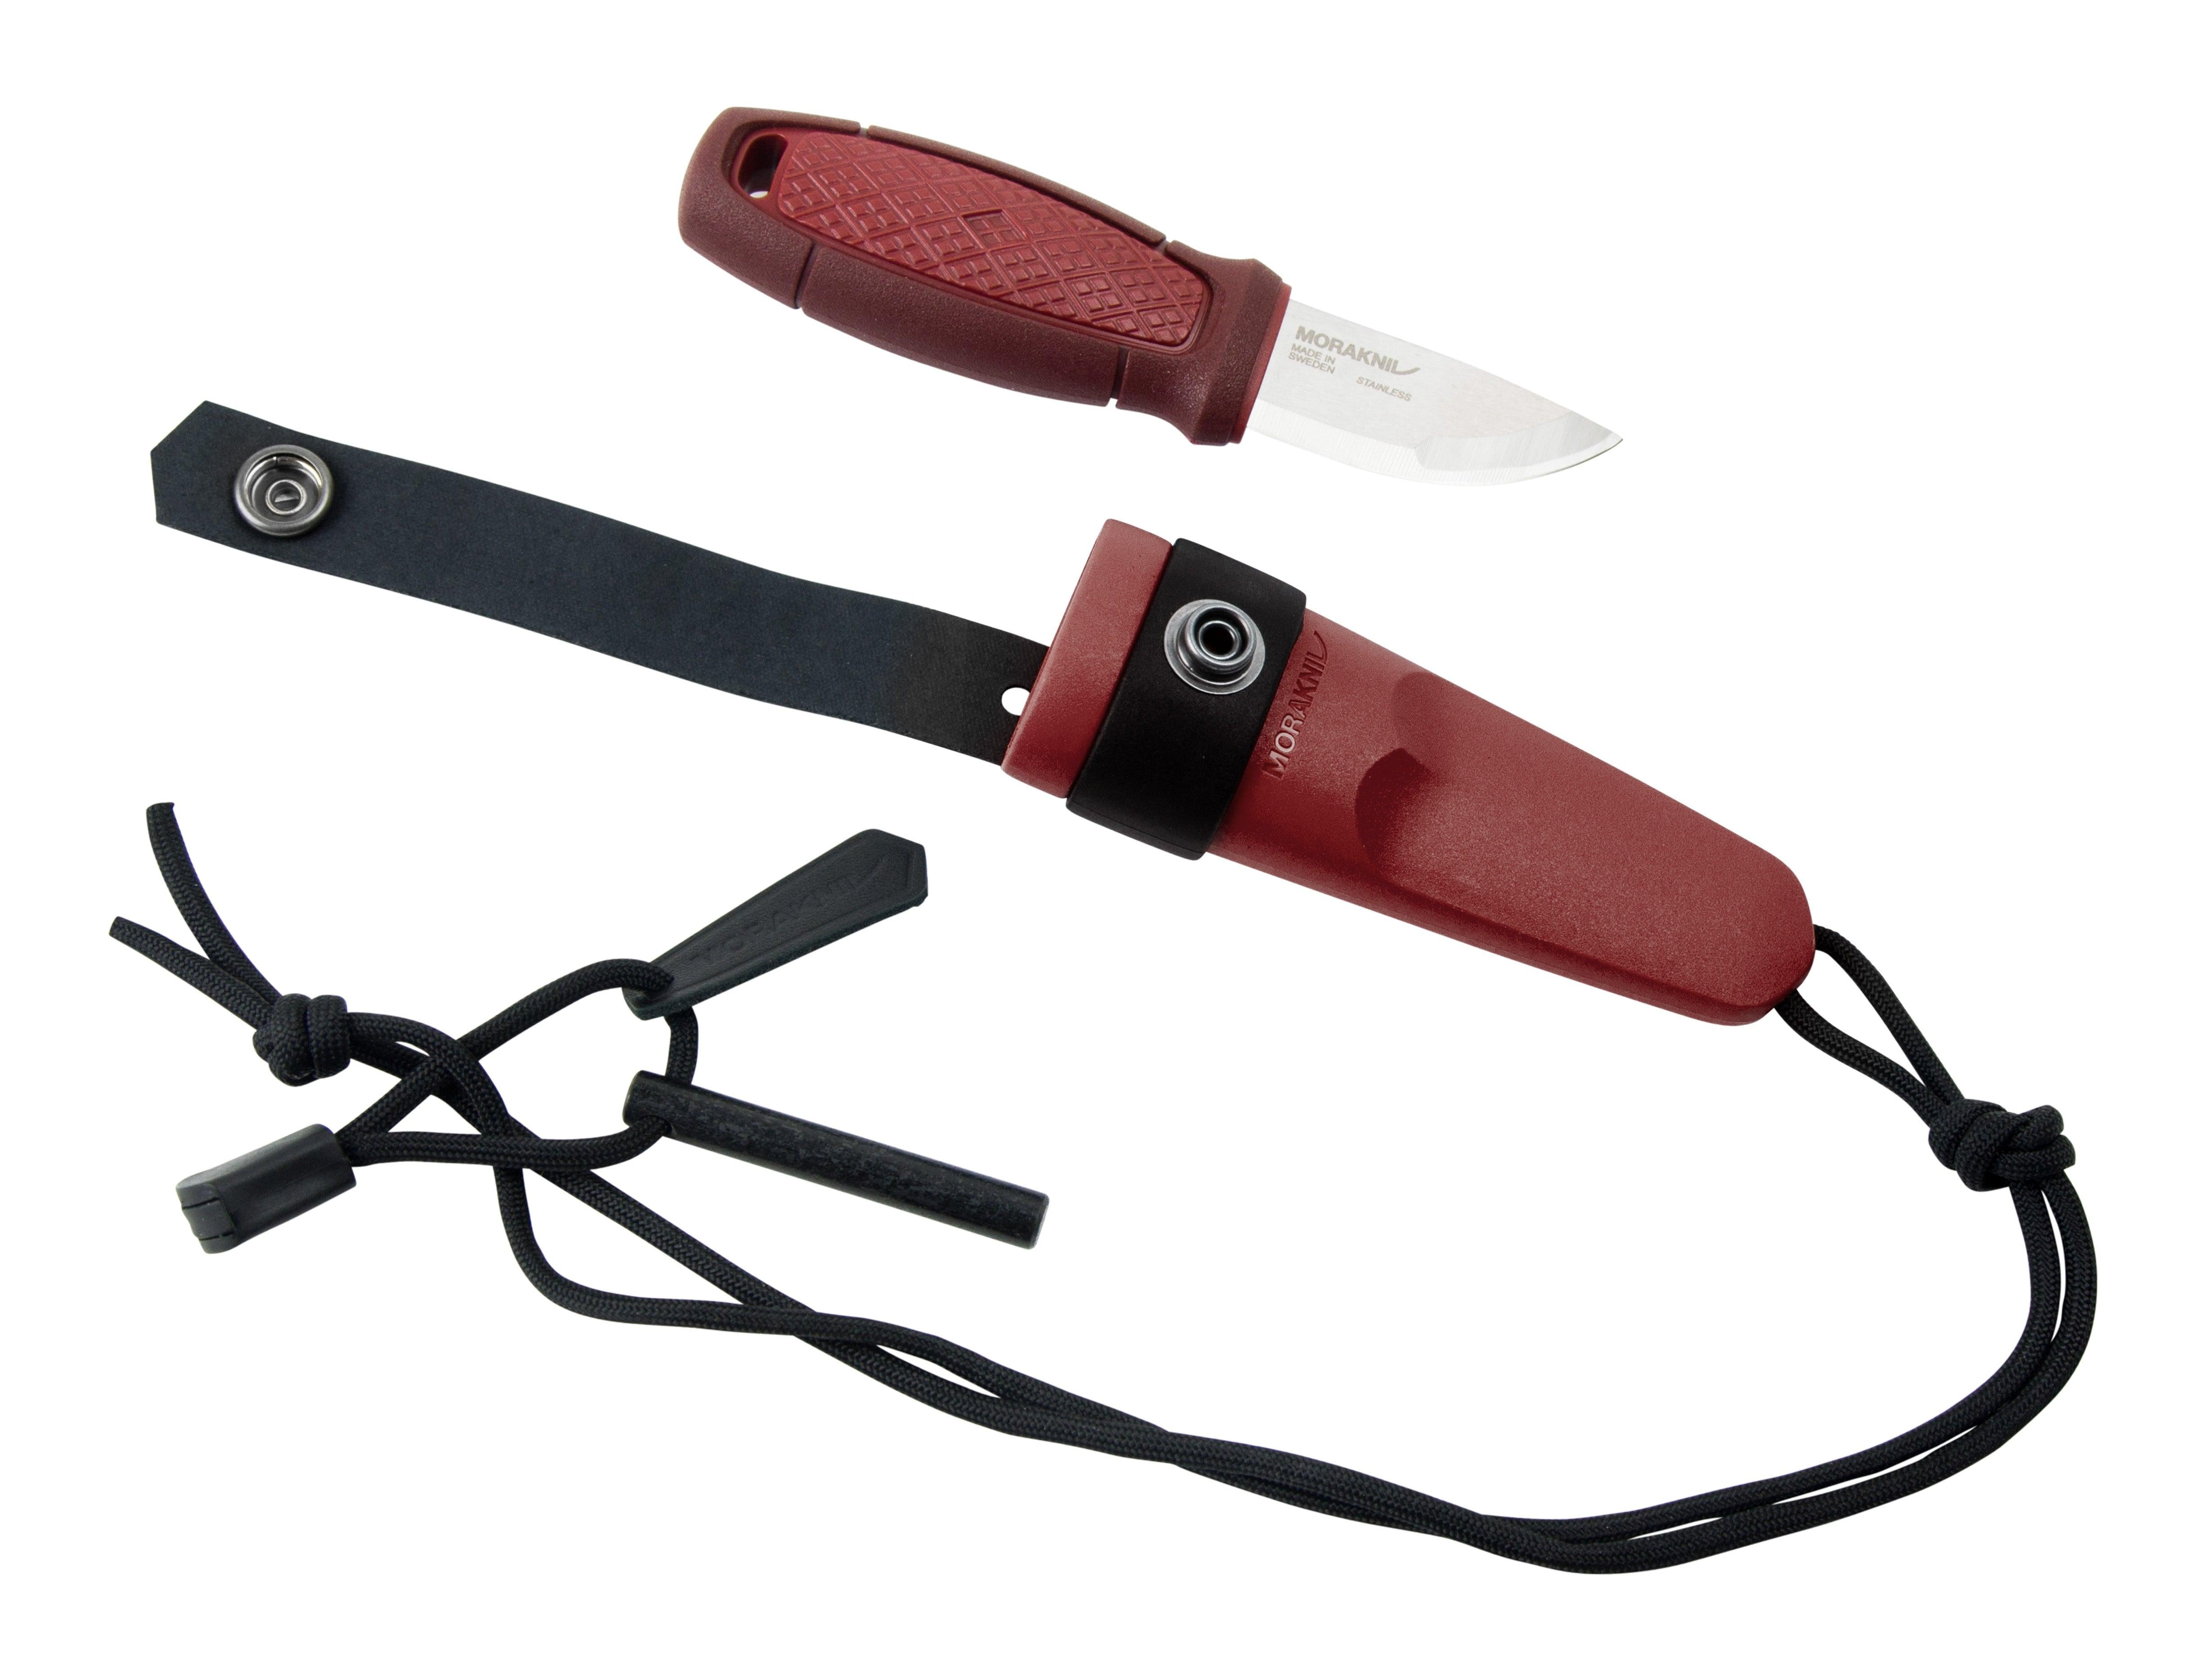 Morakniv® Eldris Stainless Knife with Firestarter Kit and Plastic